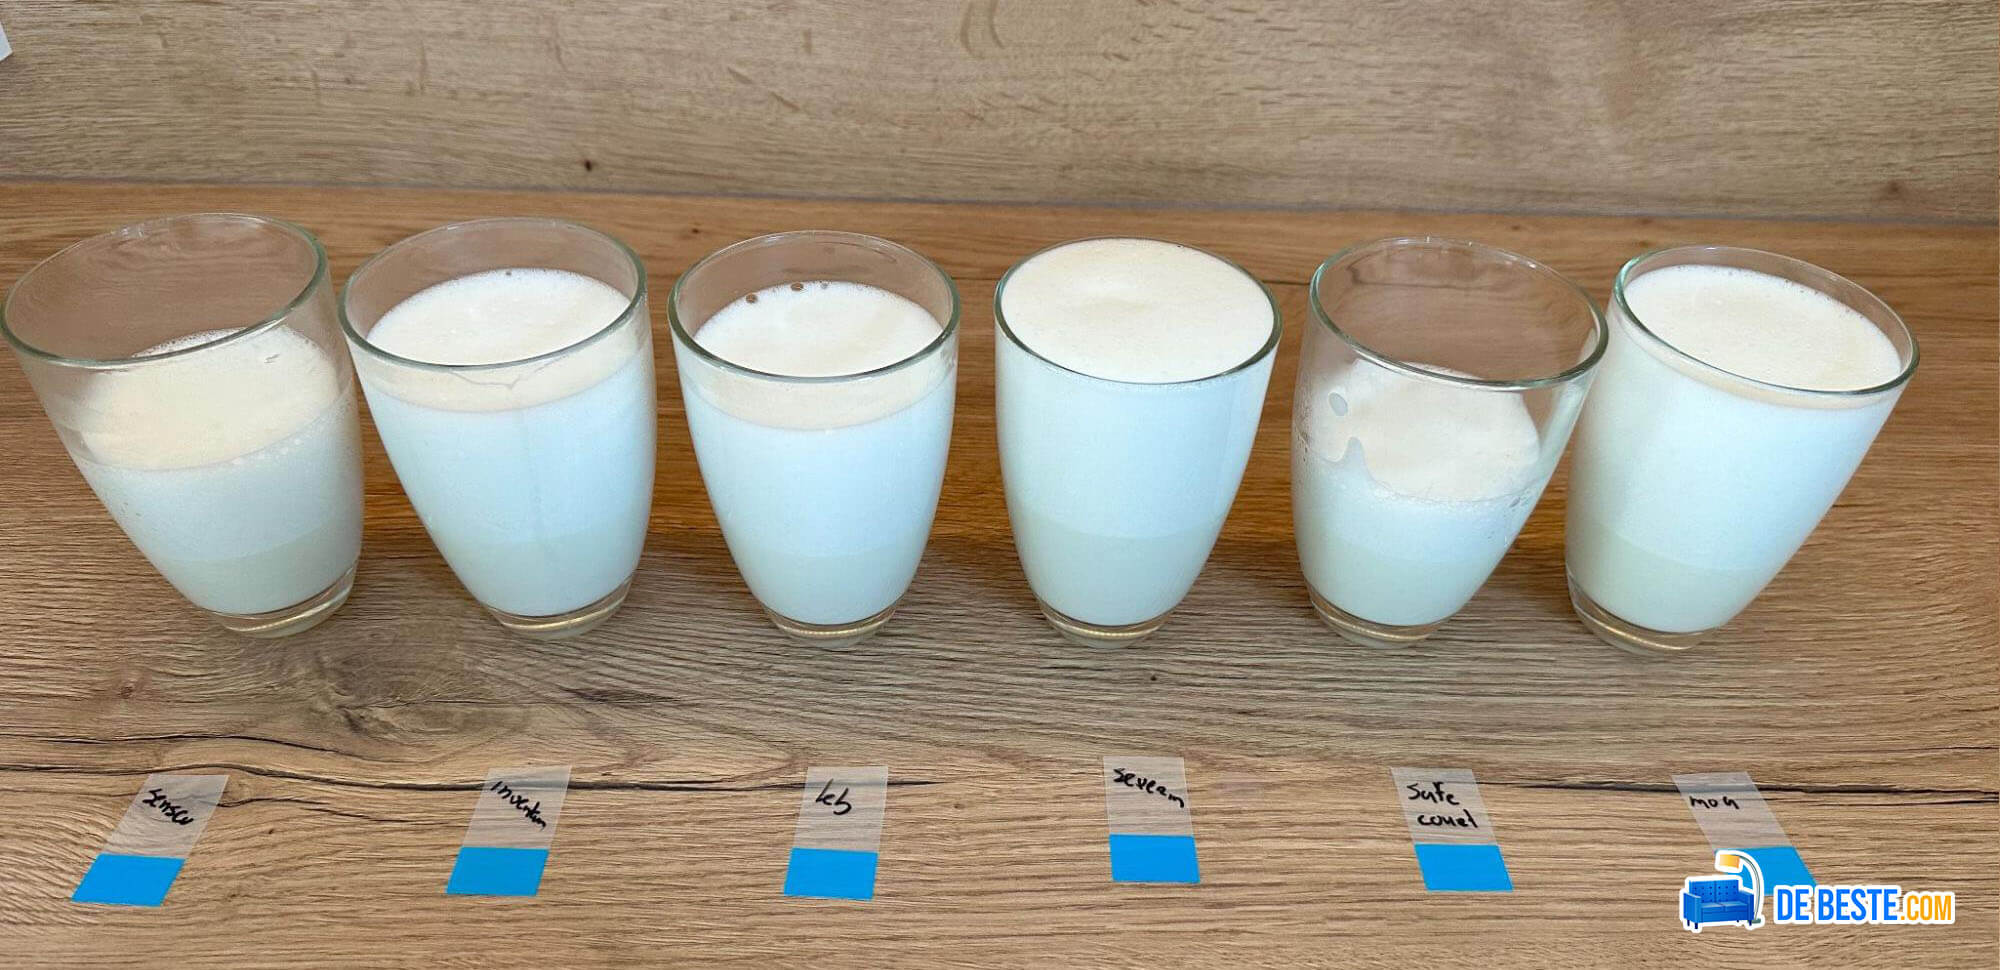 Op een tafel staan vijf glazen melk opgesteld.